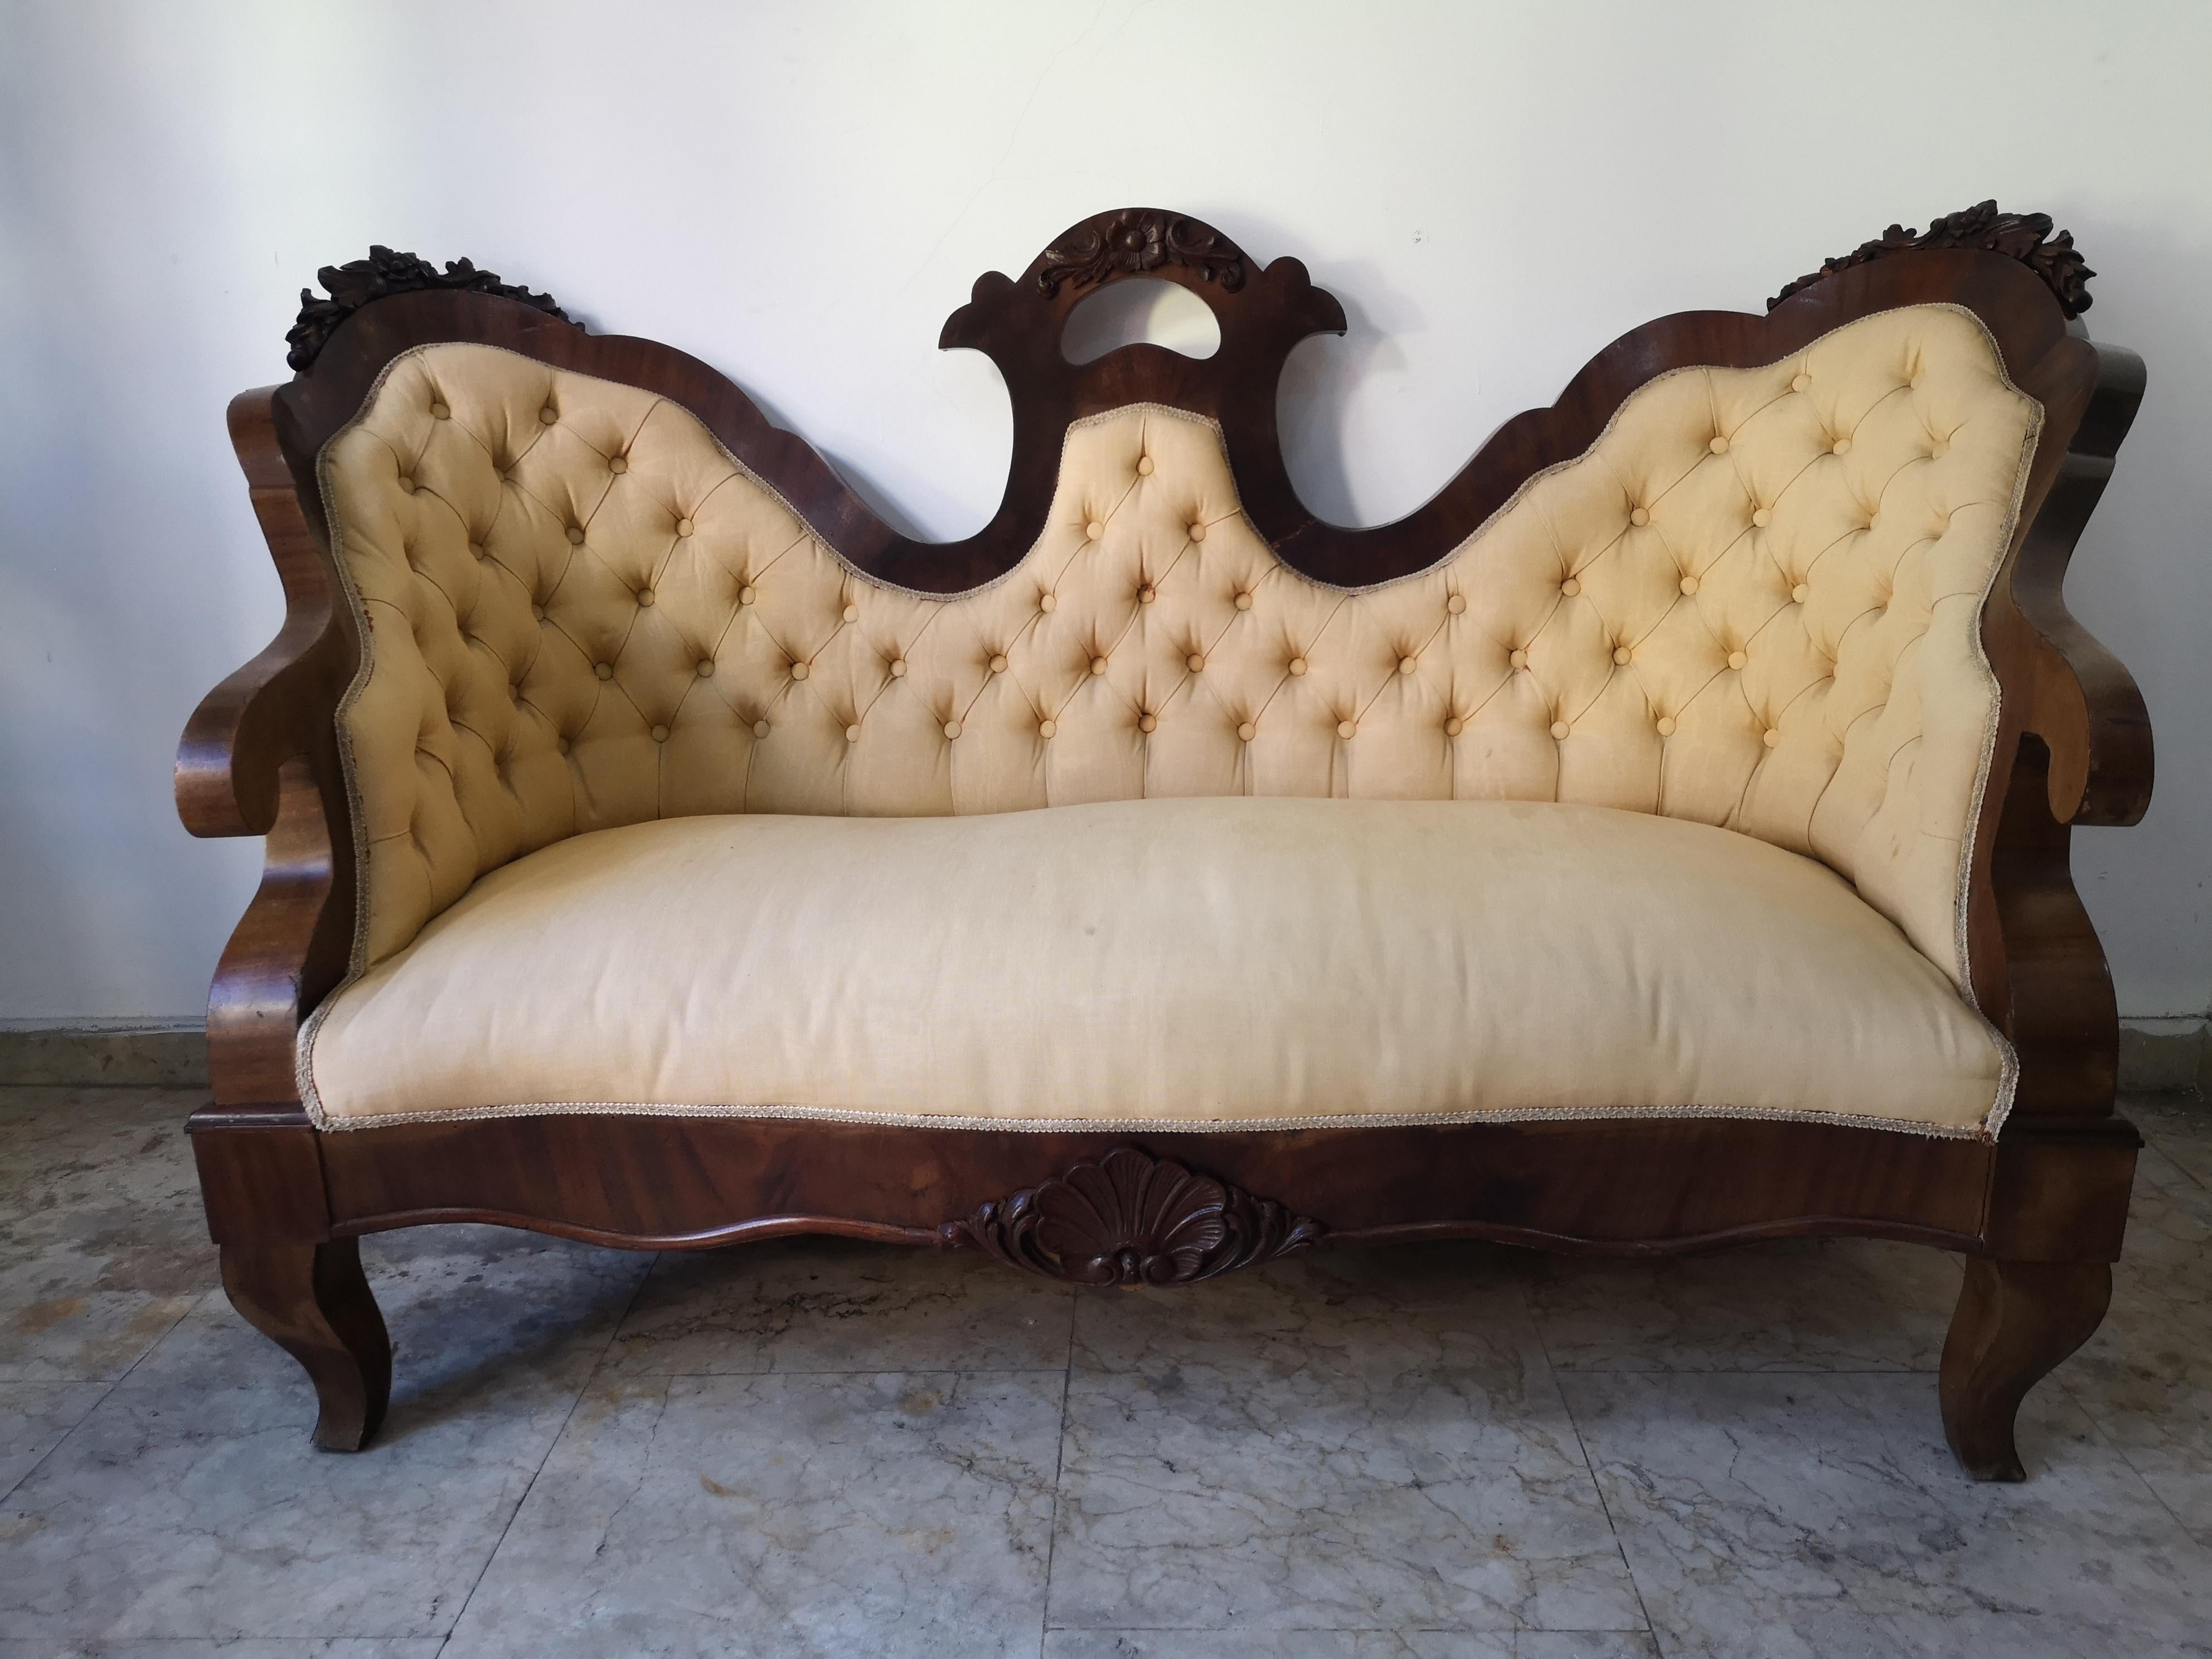 Zweisitziges Louis-Philippe-Sofa, 1870 - 1880. Hergestellt aus Nussbaumholz und Stoff. In gutem Zustand.